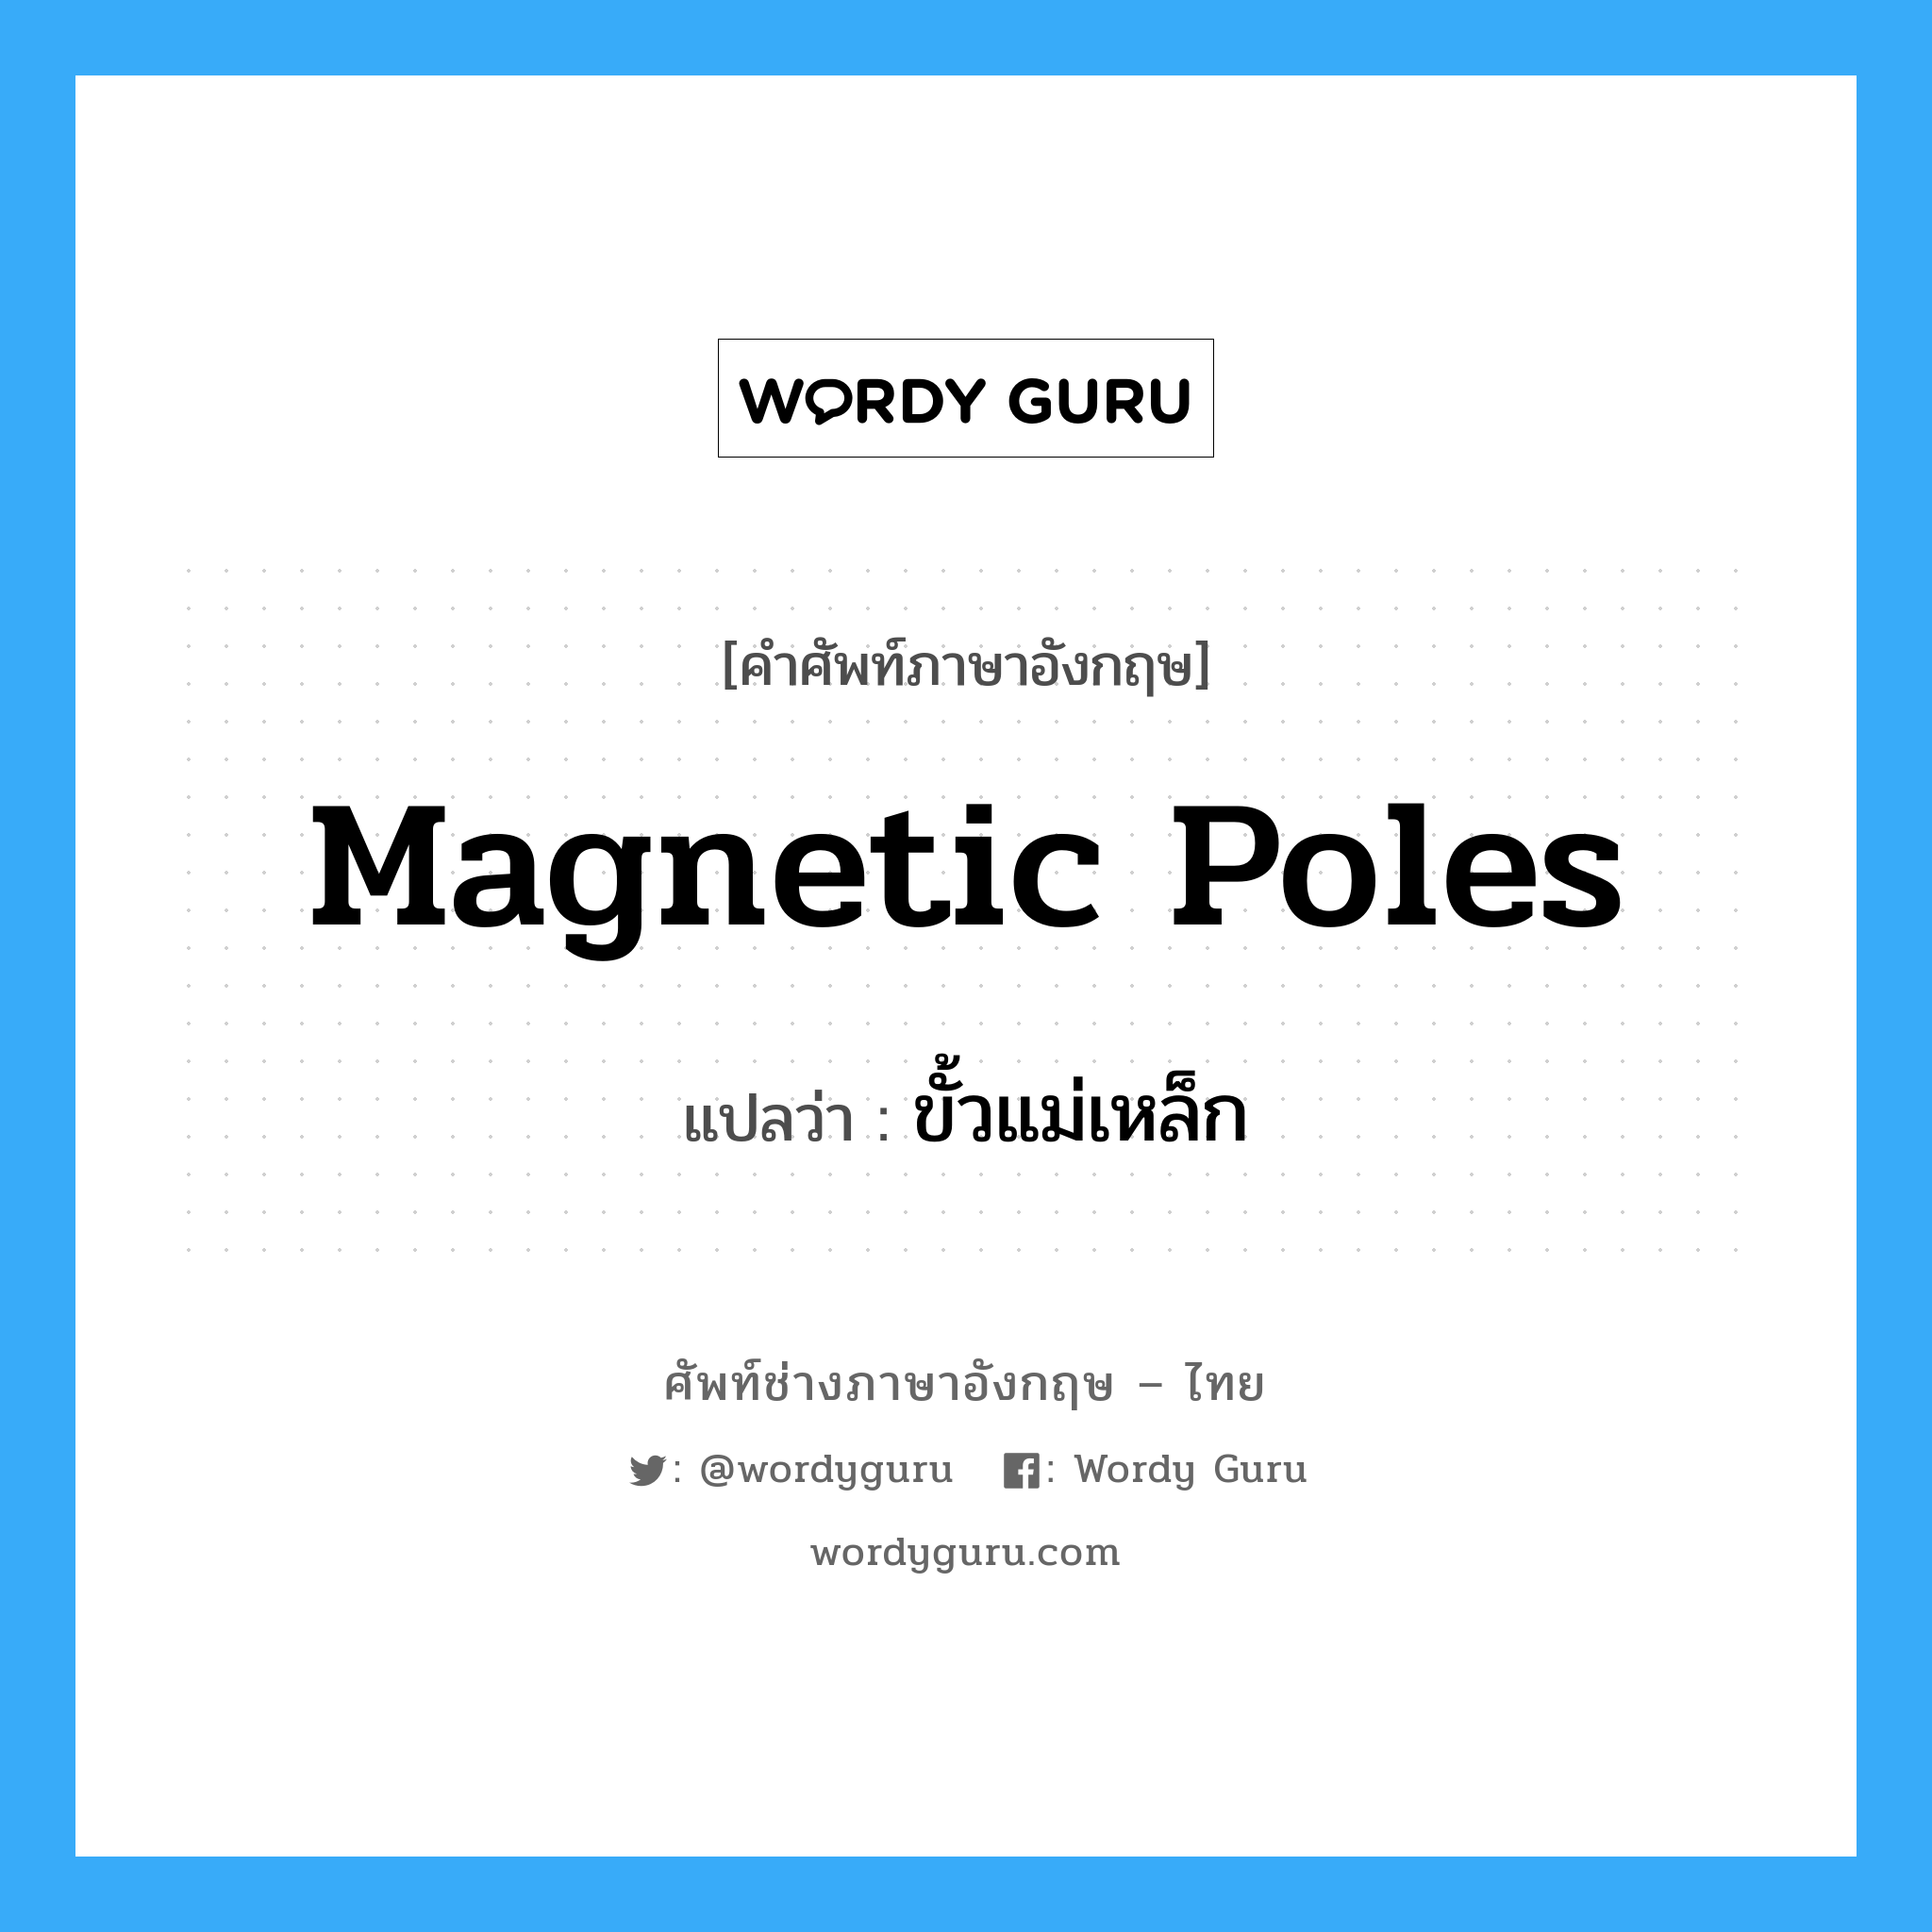 ขั้วแม่เหล็ก ภาษาอังกฤษ?, คำศัพท์ช่างภาษาอังกฤษ - ไทย ขั้วแม่เหล็ก คำศัพท์ภาษาอังกฤษ ขั้วแม่เหล็ก แปลว่า magnetic poles